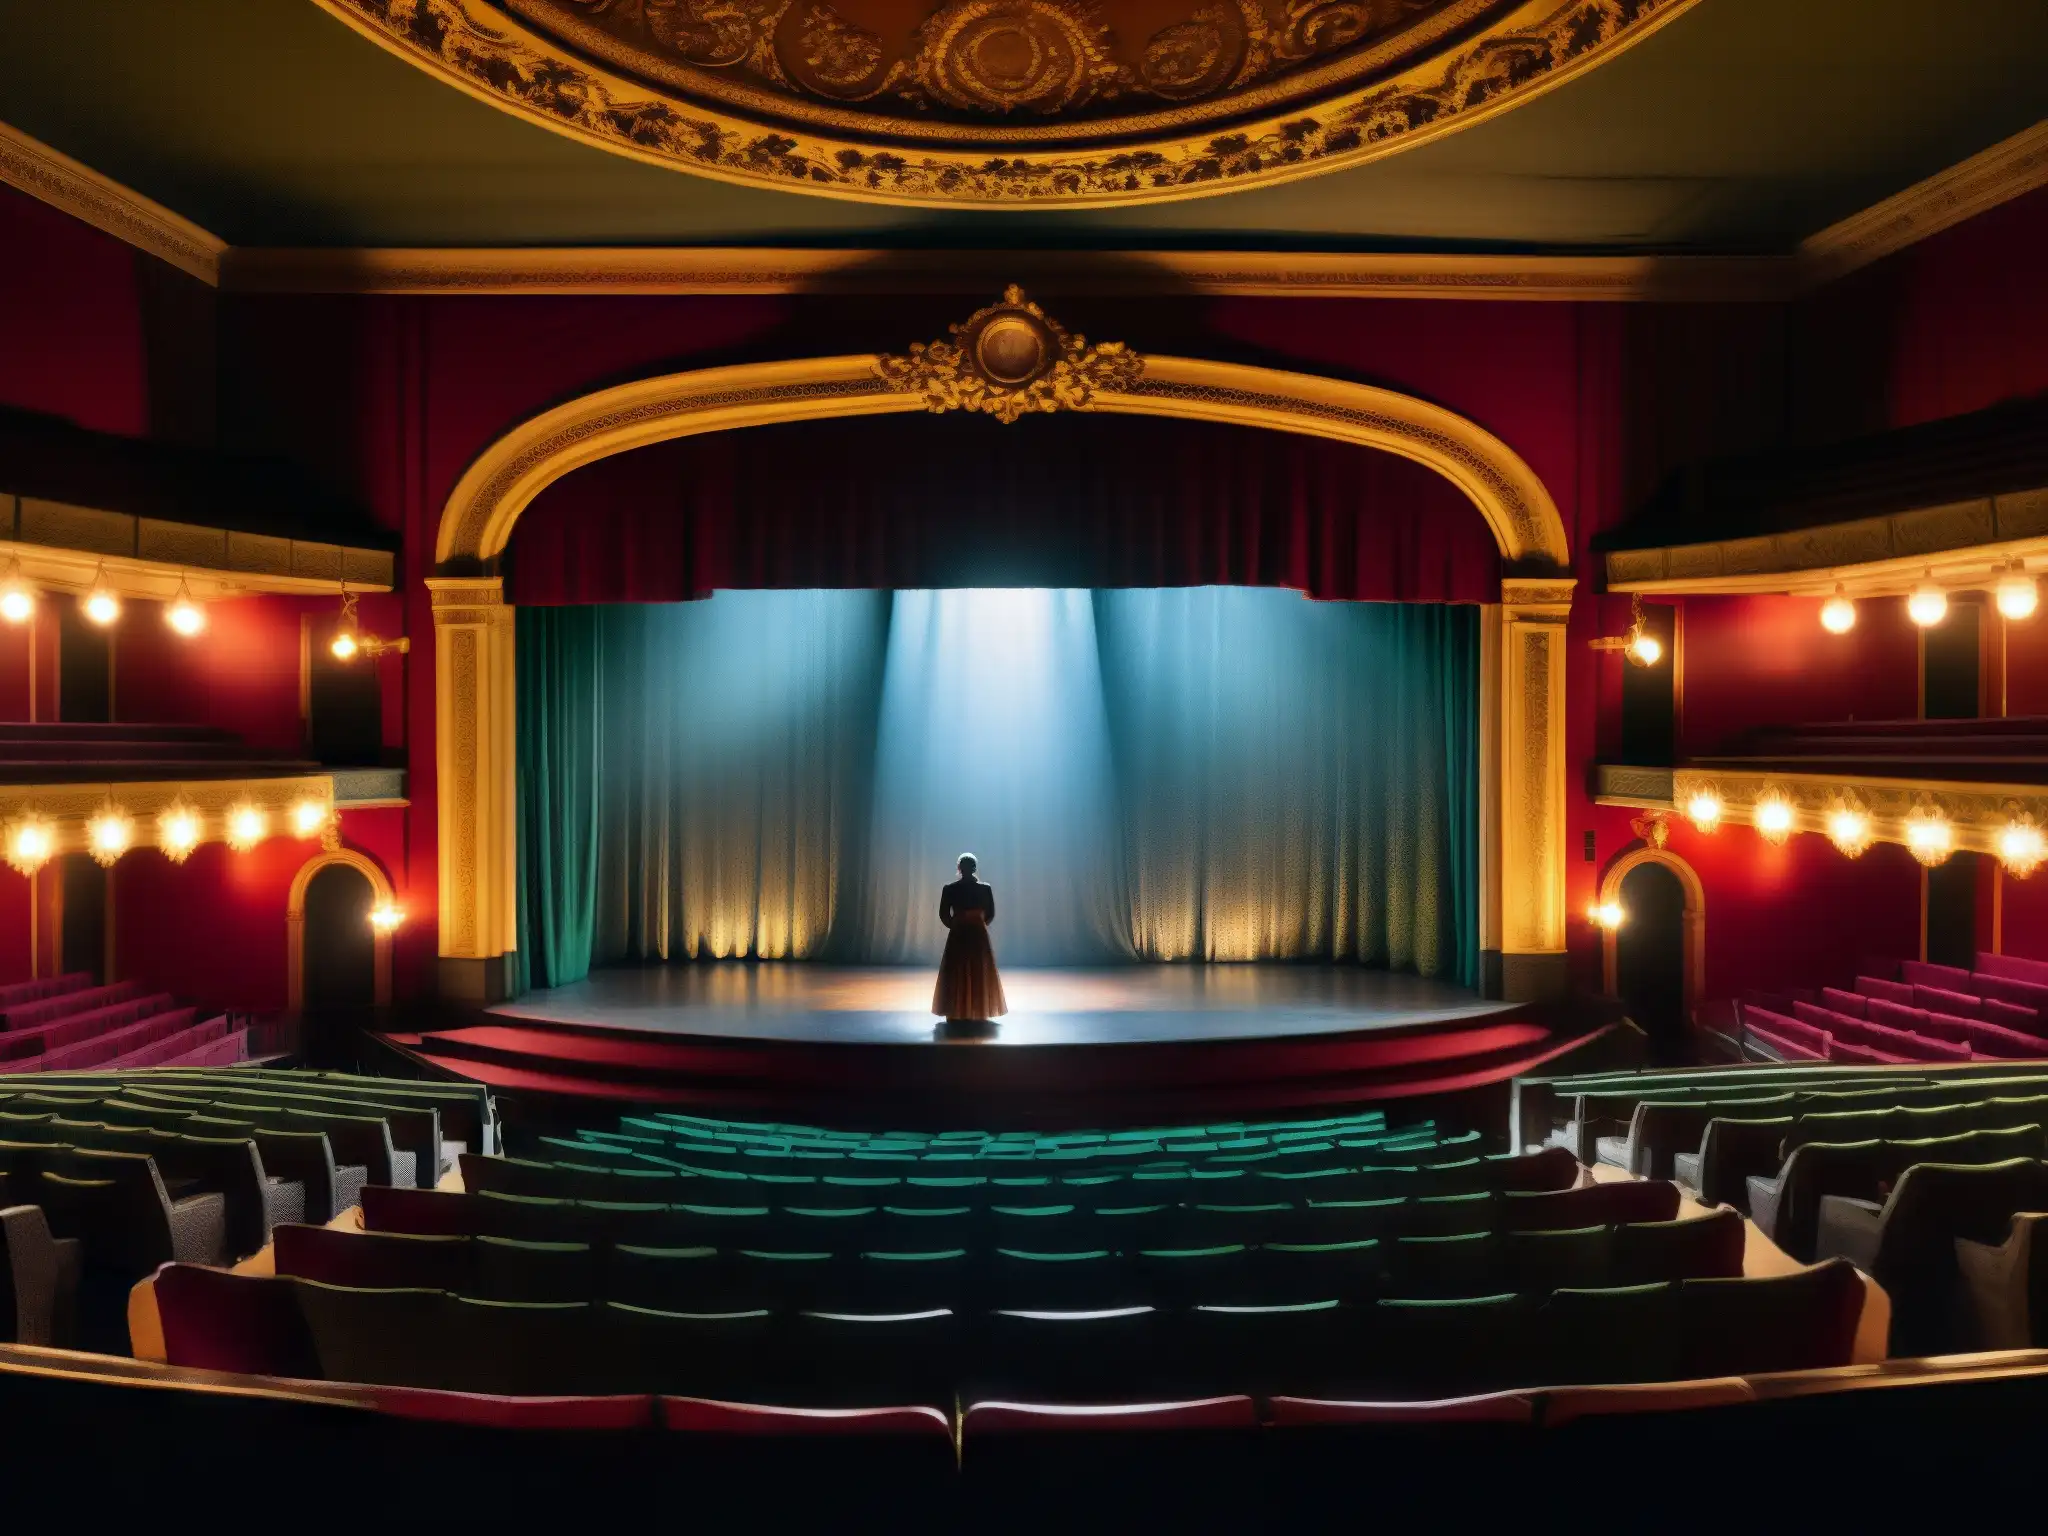 En el Teatro de Calcuta, un espectáculo sobrenatural cobra vida: una figura fantasmal en ropa victoriana desgarrada brilla en el escenario, mientras una audiencia en silueta observa asombrada